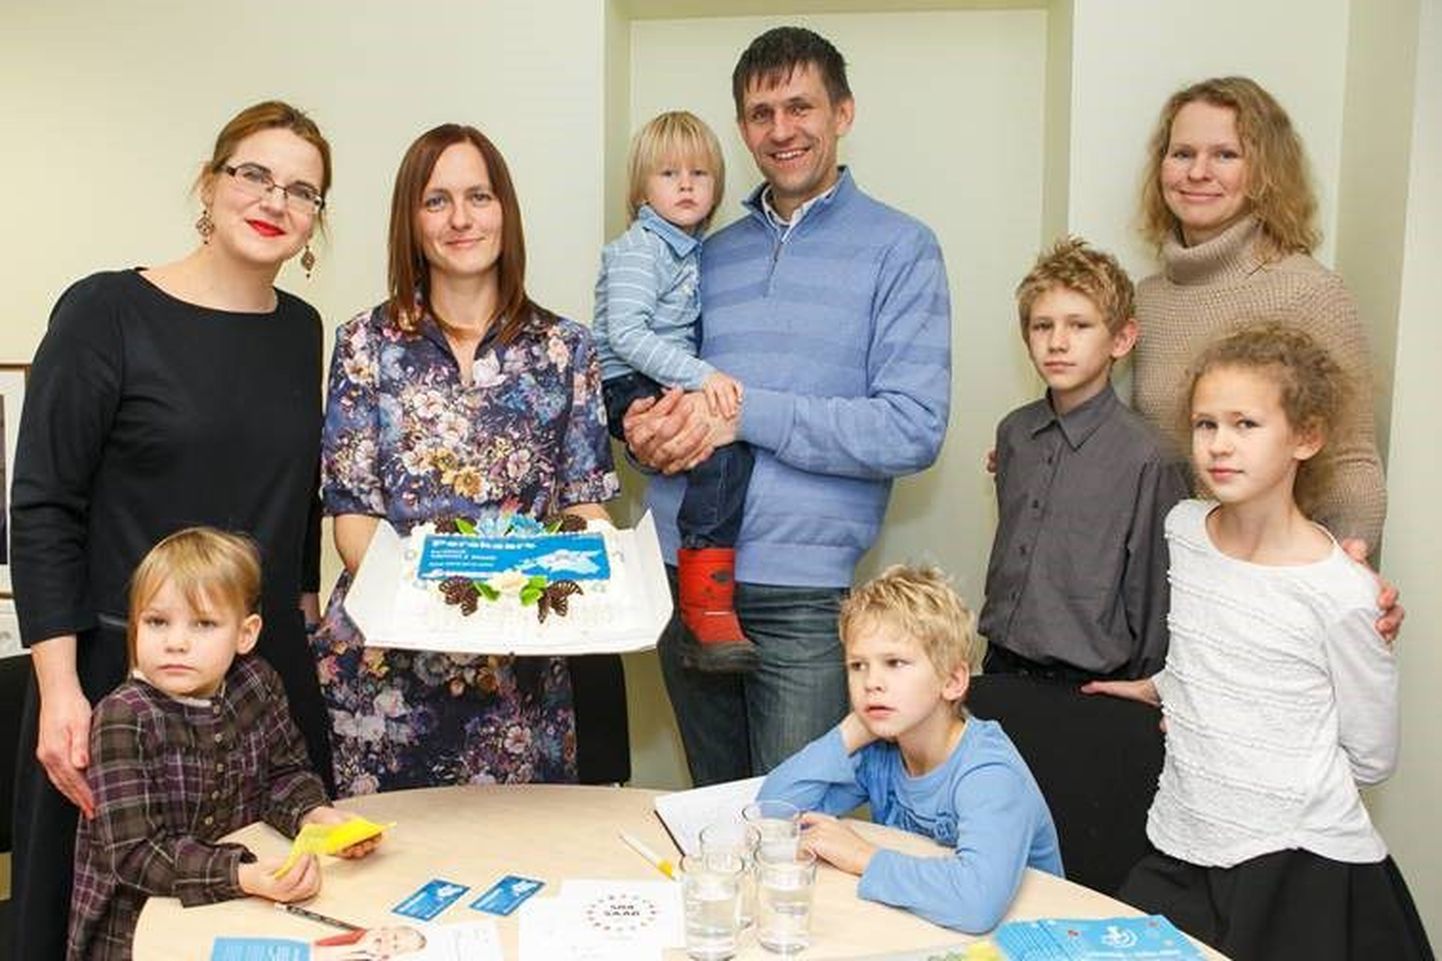 MTÜ Eesti Lasterikaste Perede Liit andis esimese uuenenud perekaardi üle võrdõigusvolinikule ja viie lapse emale Liisa Pakostale.